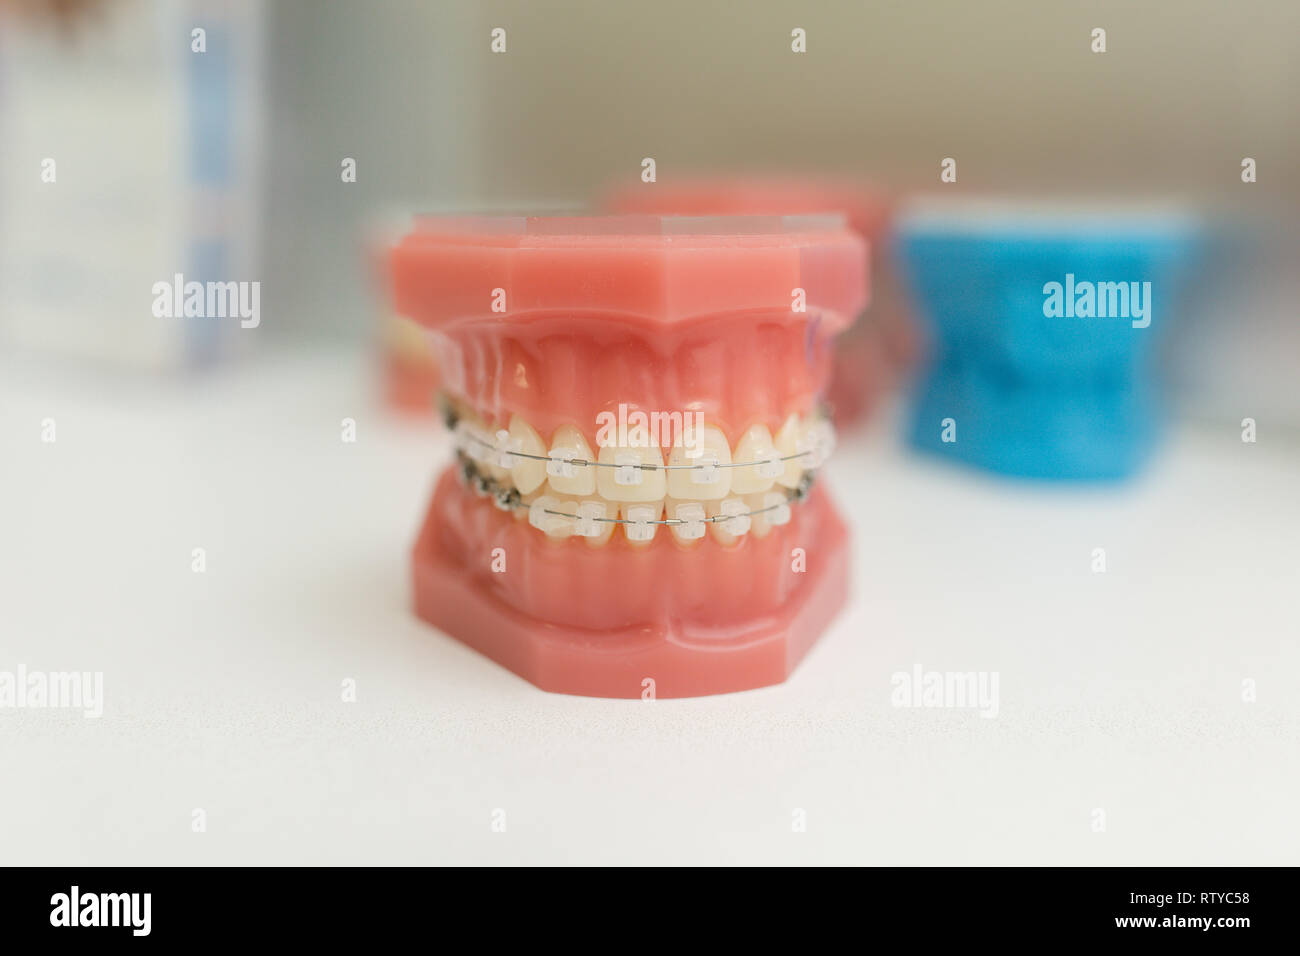 Modello ortodontico - Denti bianchi con bretelle. Mascella umana. Modelli di odontoiatria. Foto Stock